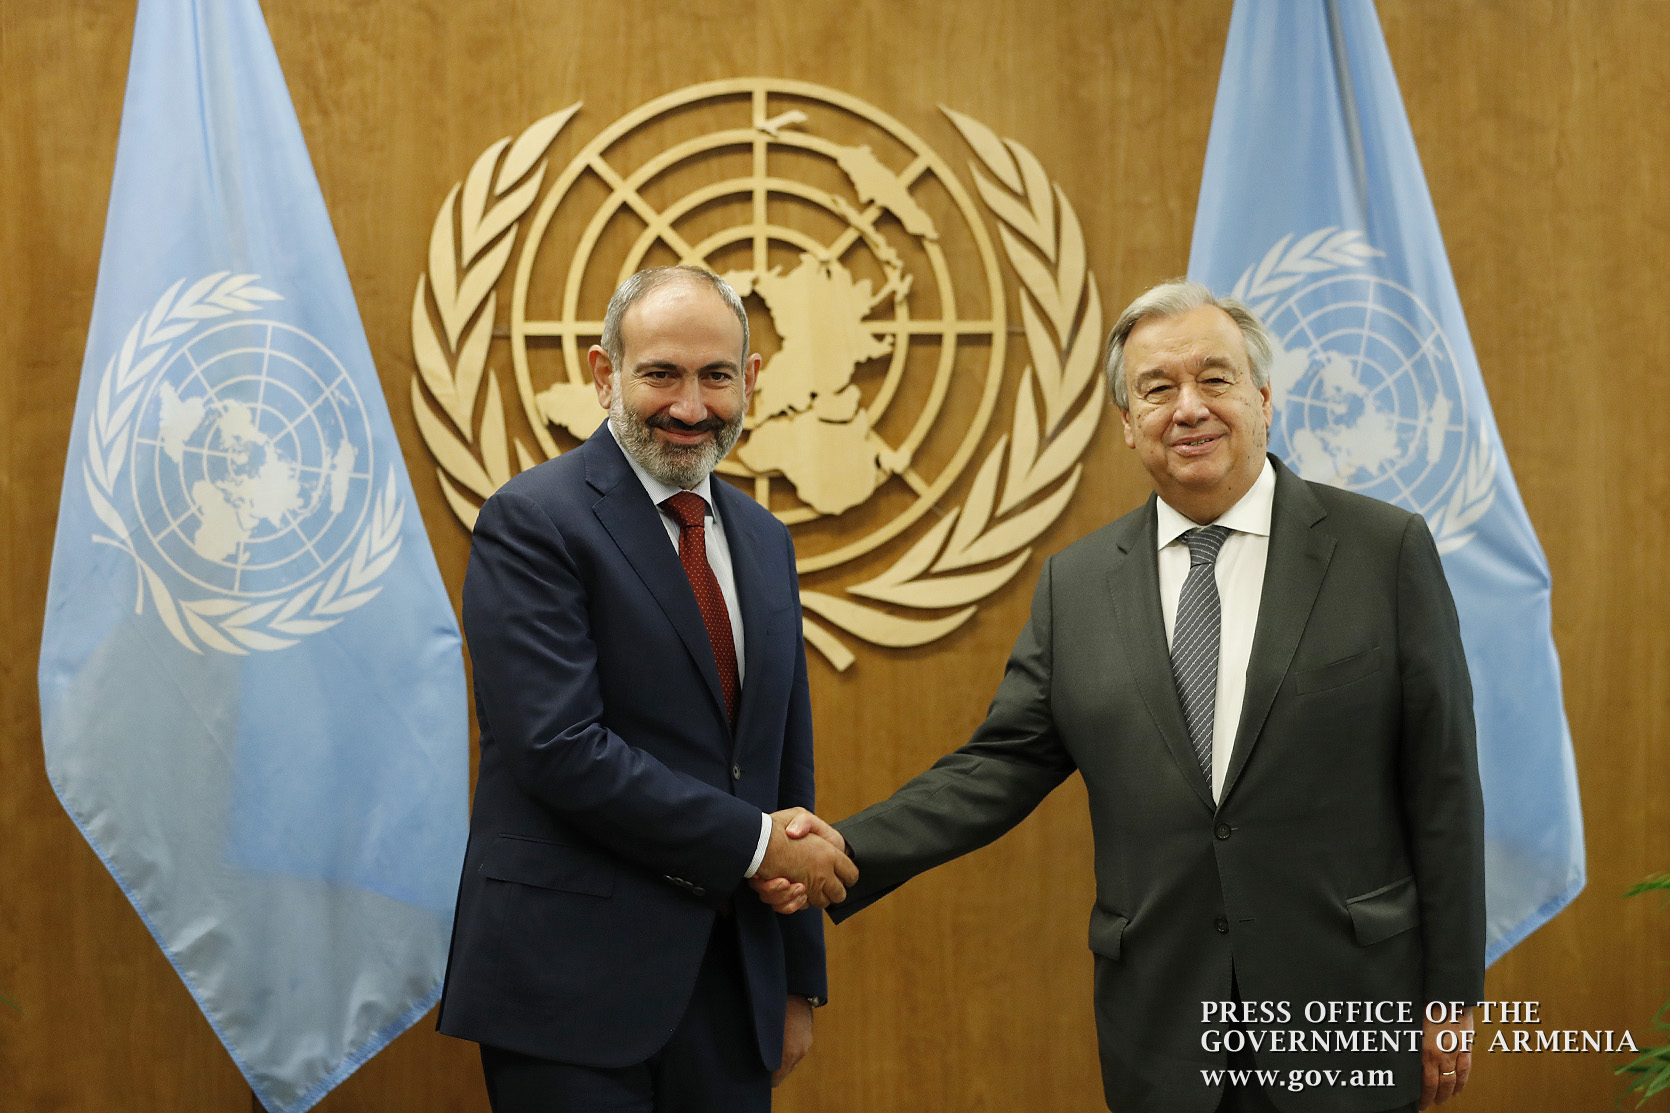 ООН полностью поддерживает повестку реформ Армении: премьер-министр Армении встретился с генсеком ООН